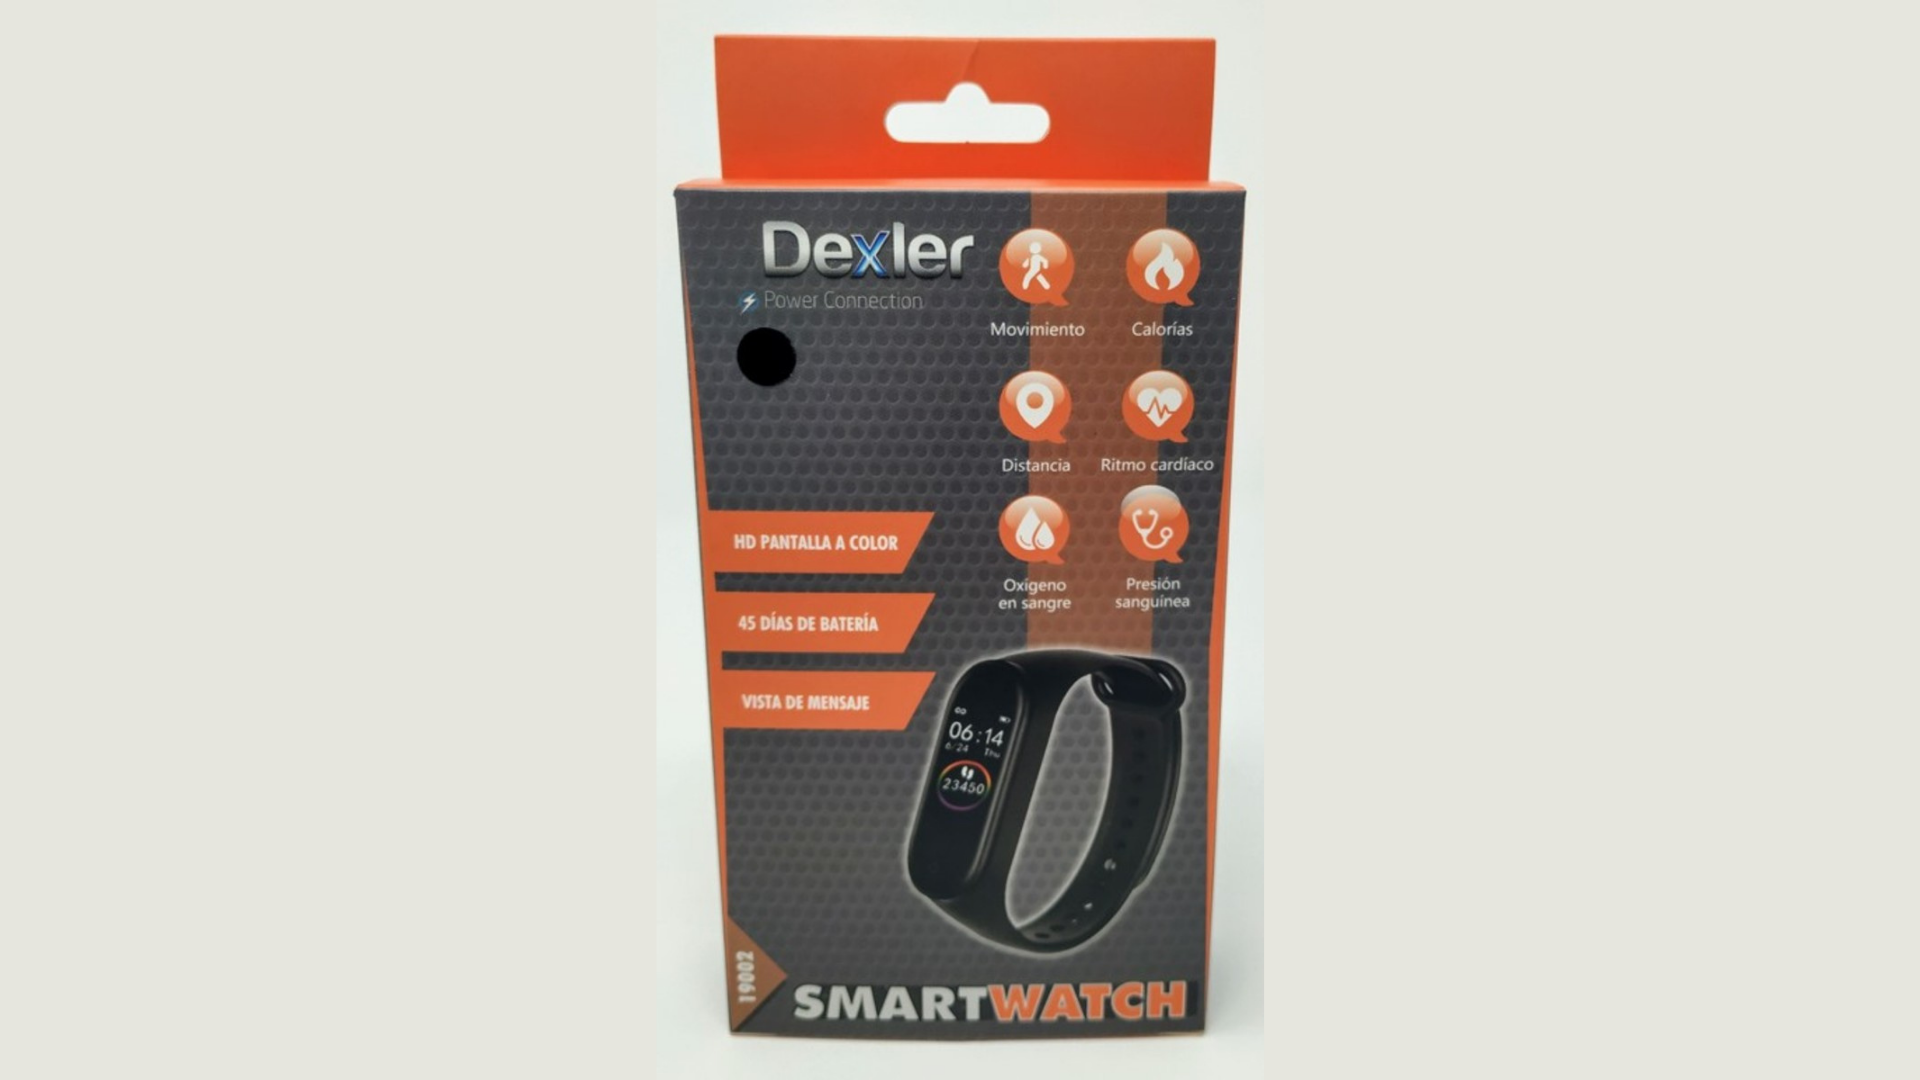 SmartWatch Dexler, Globaldex